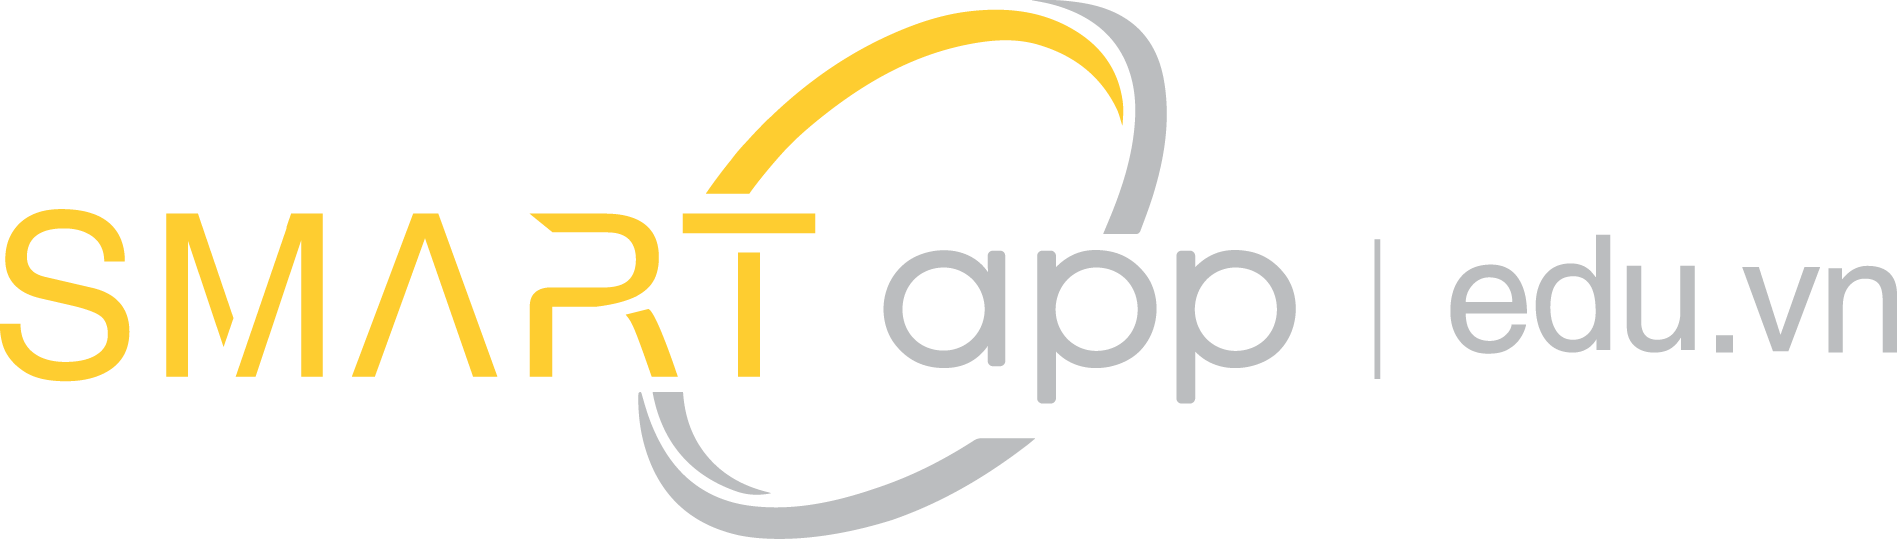 logo-smartpp